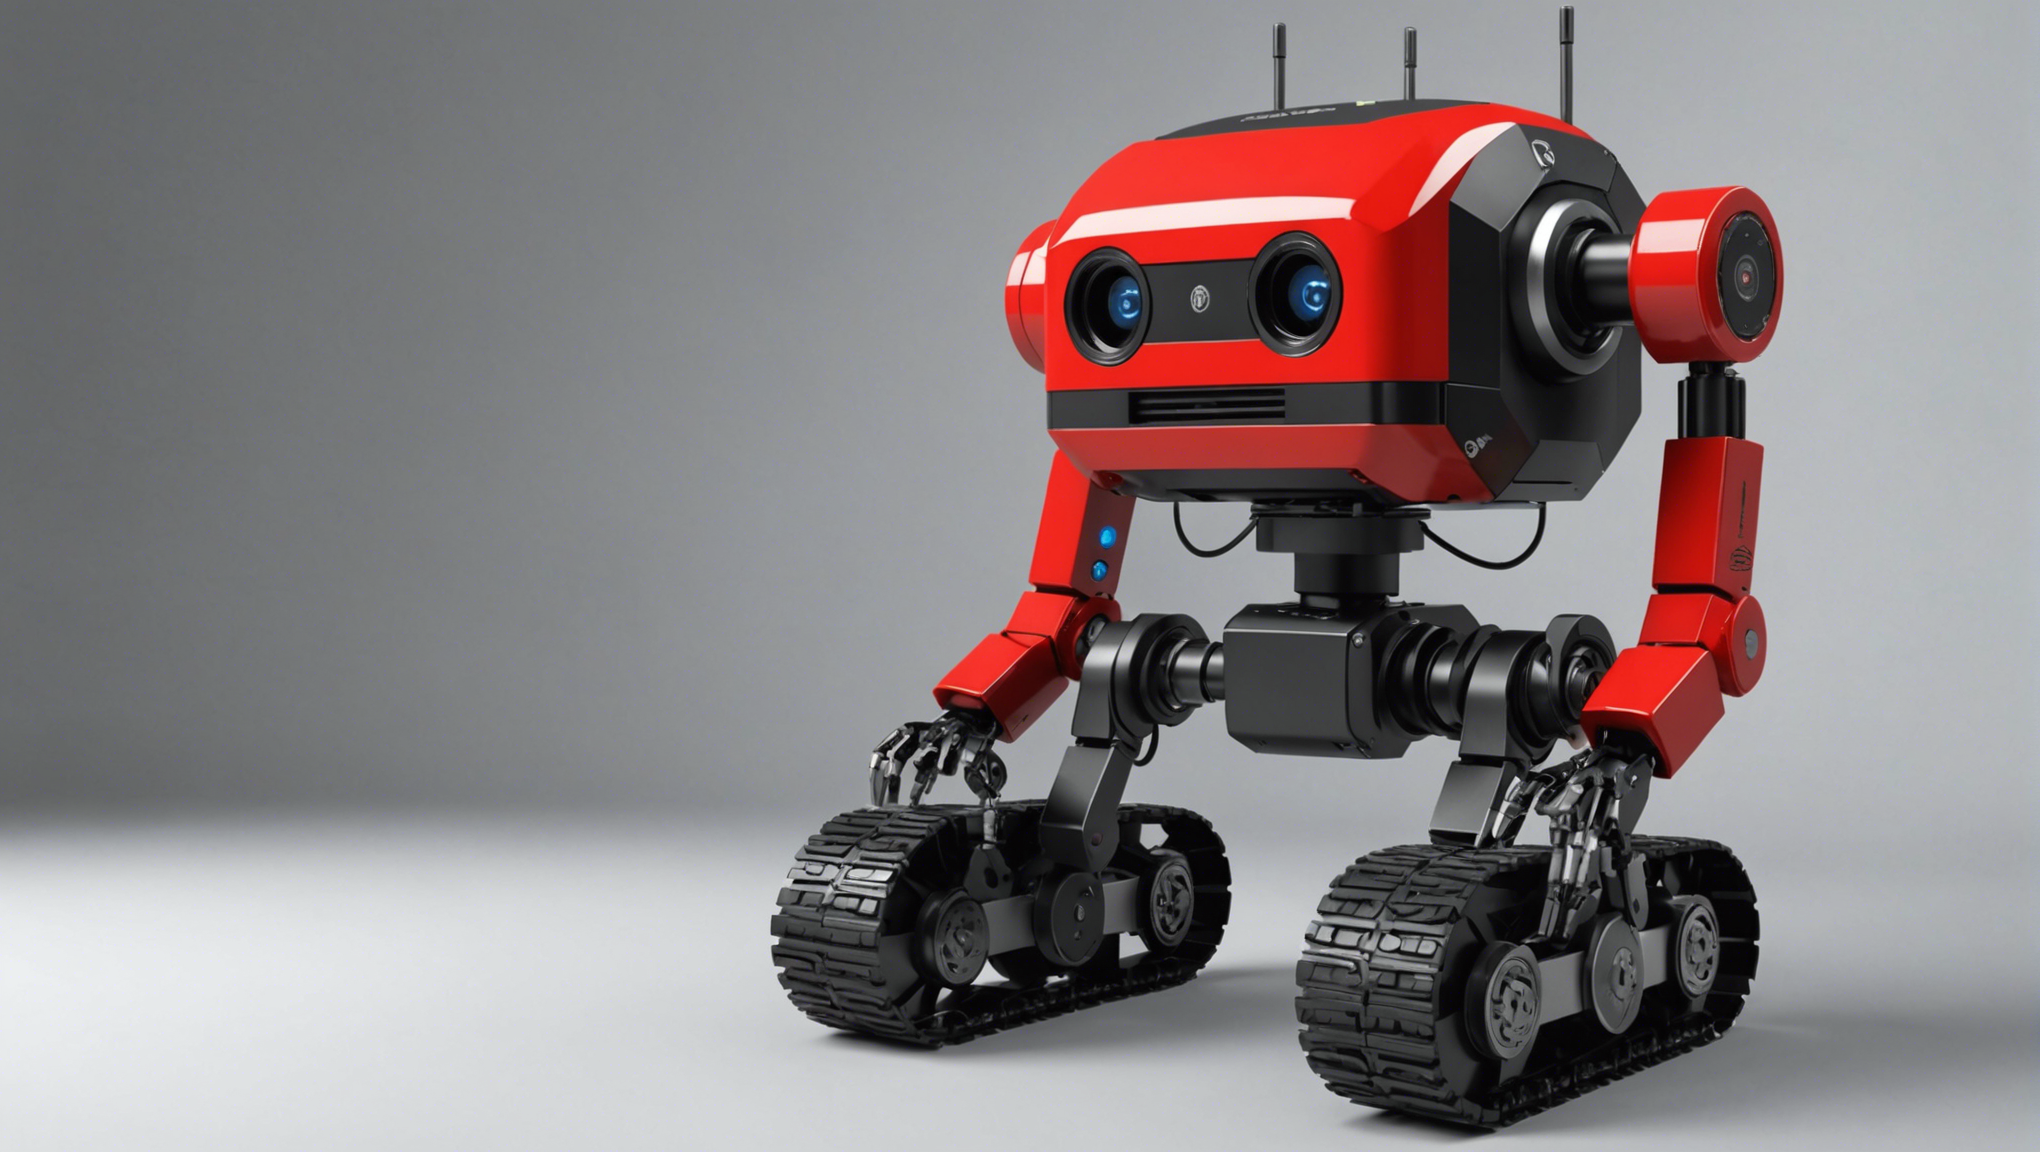 découvrez le lancement officiel du kit de développement logiciel pour le robot sawyer, une innovation révolutionnaire pour la programmation et le contrôle de ce robot industriel de nouvelle génération.